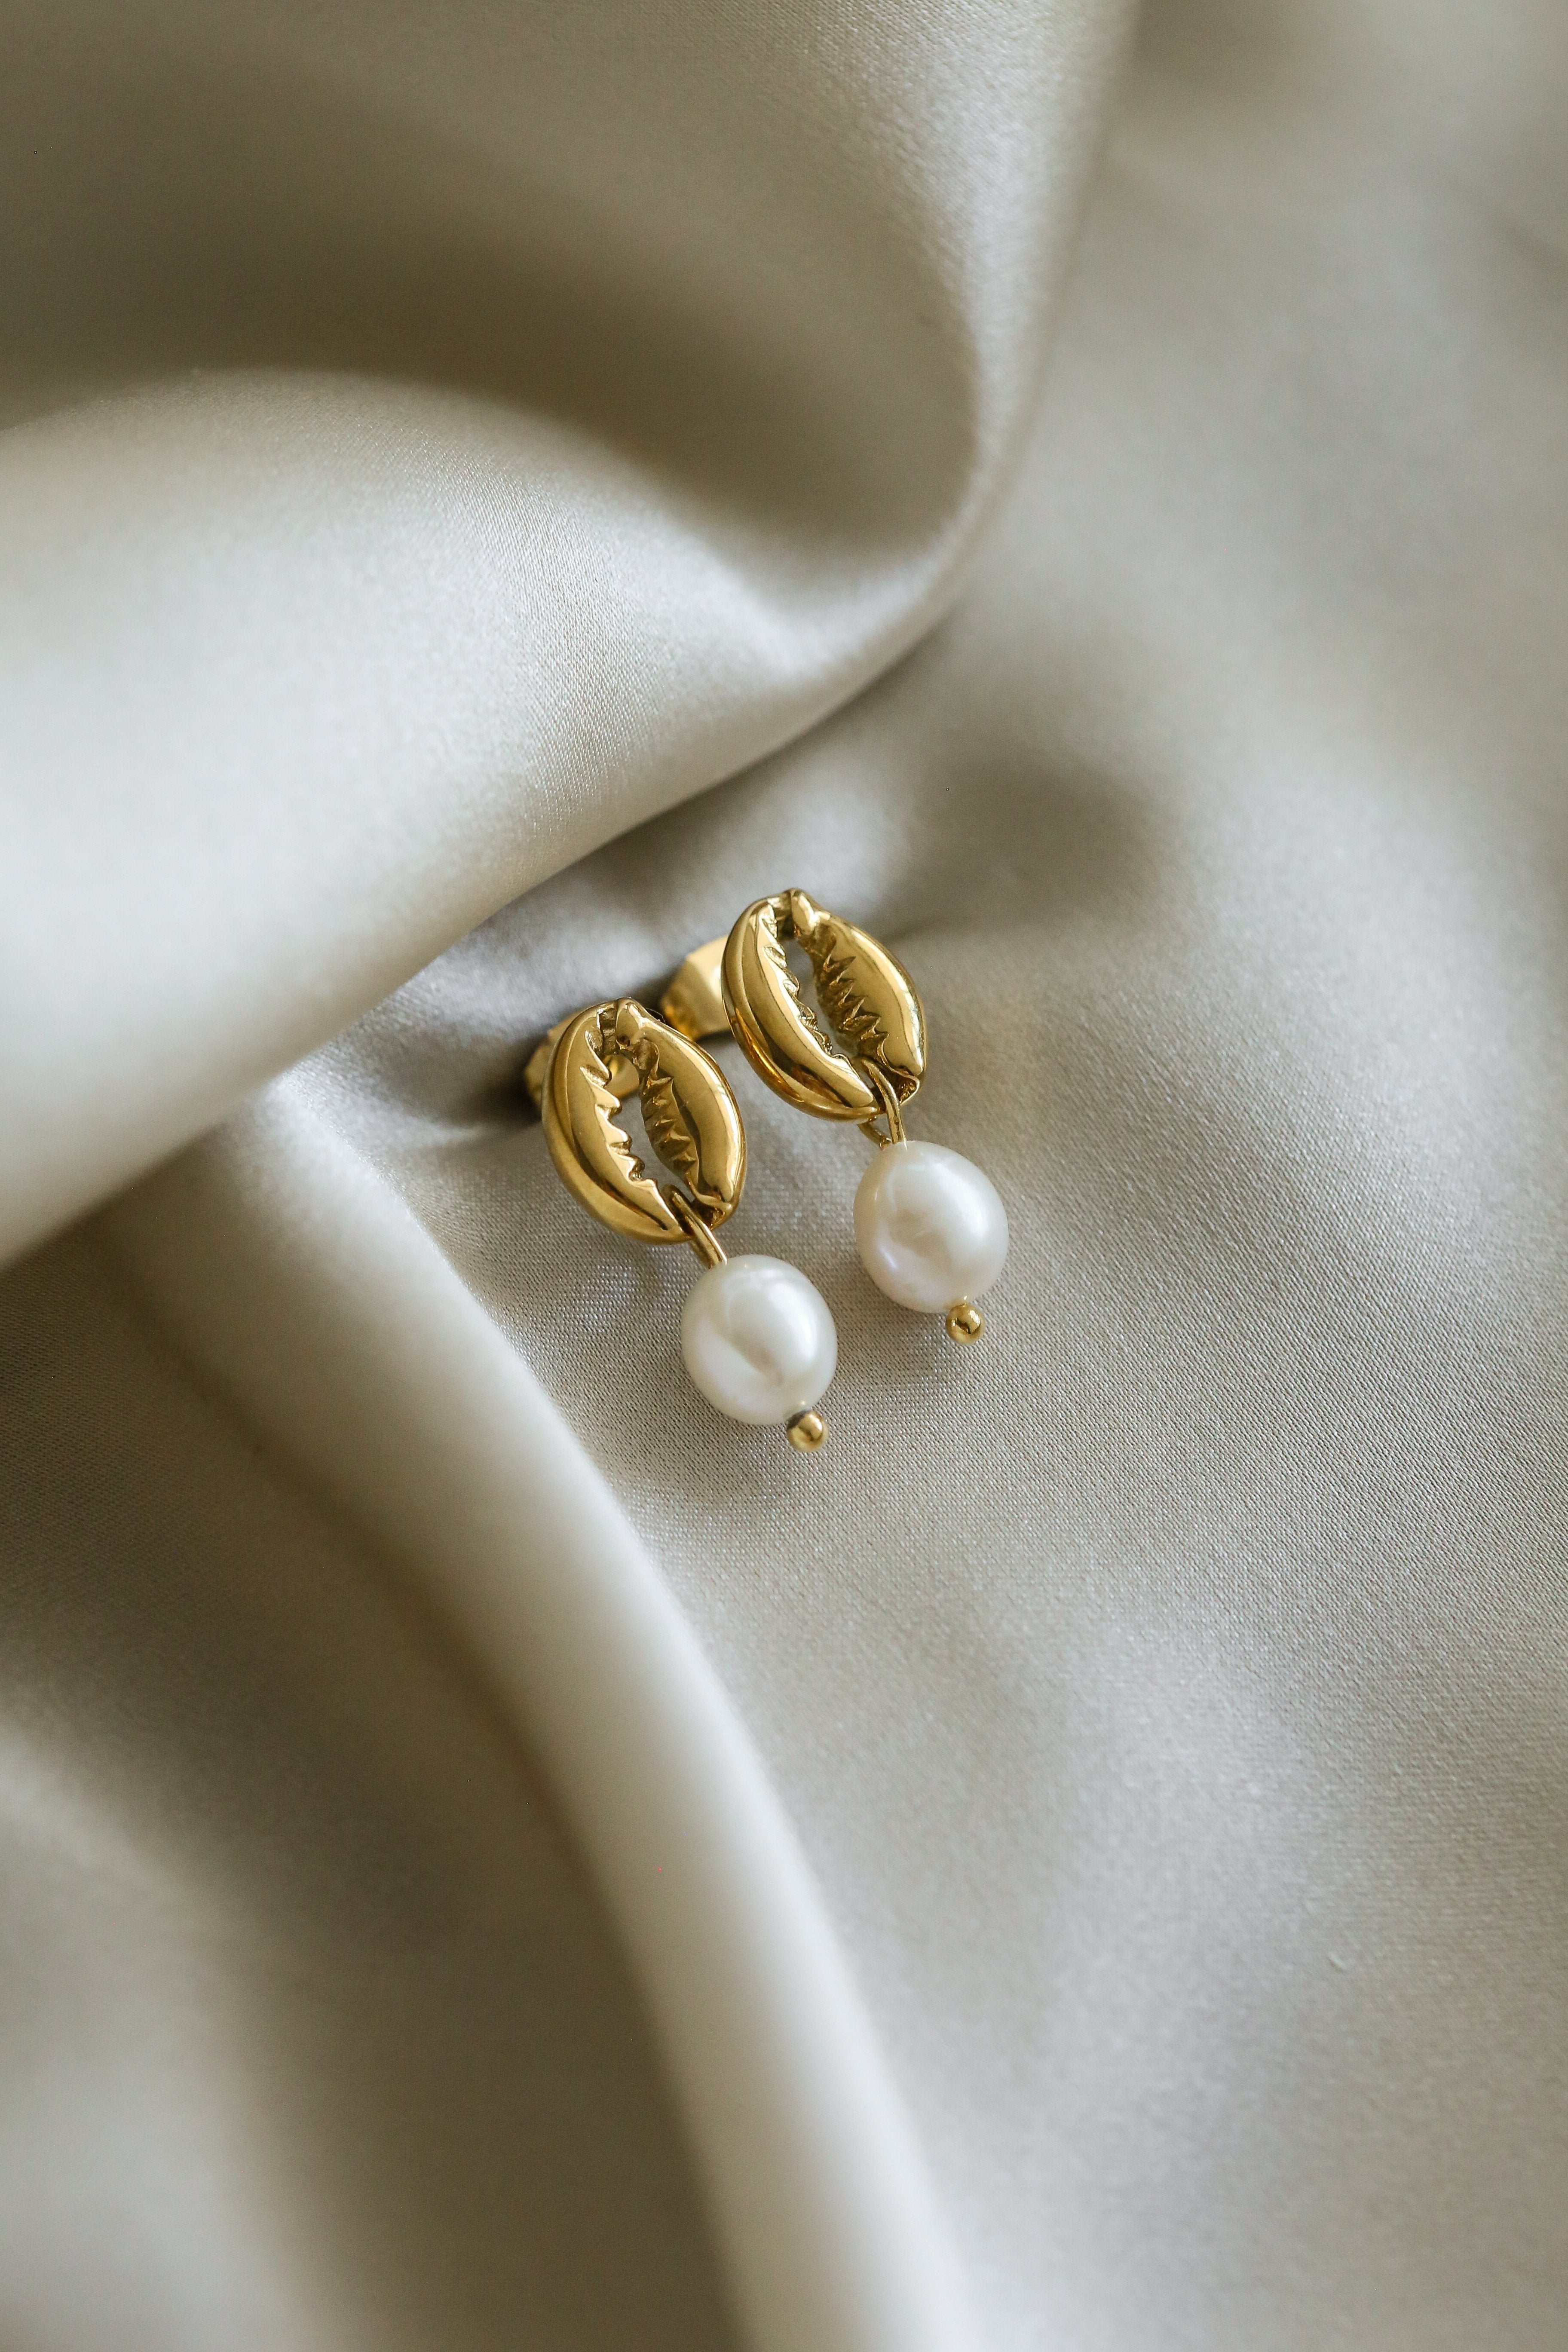 Geneve Earrings - Boutique Minimaliste has waterproof, durable, elegant and vintage inspired jewelry